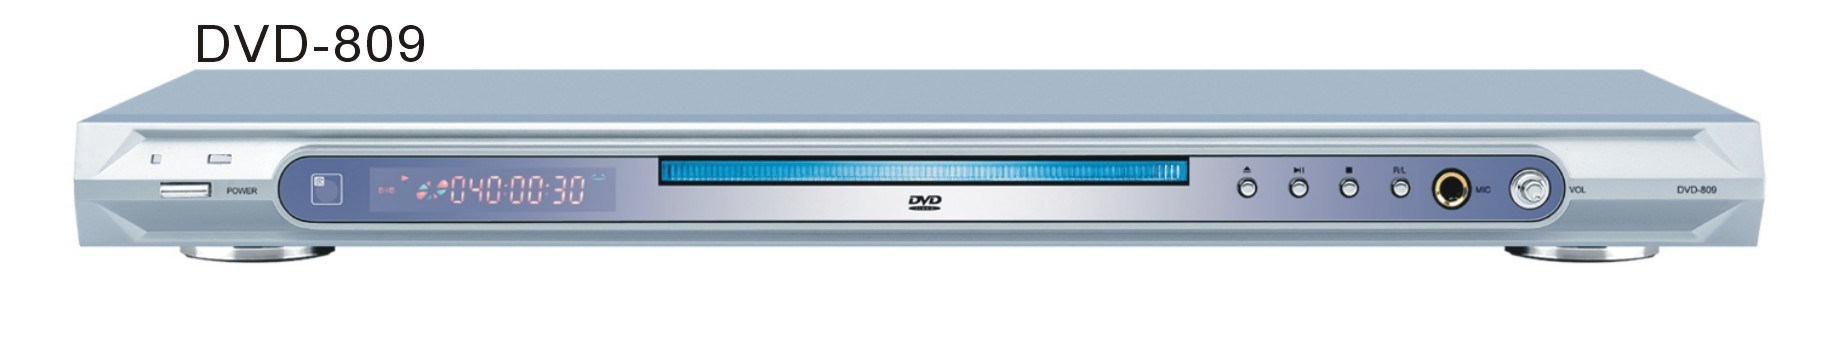 DVD Player (809)